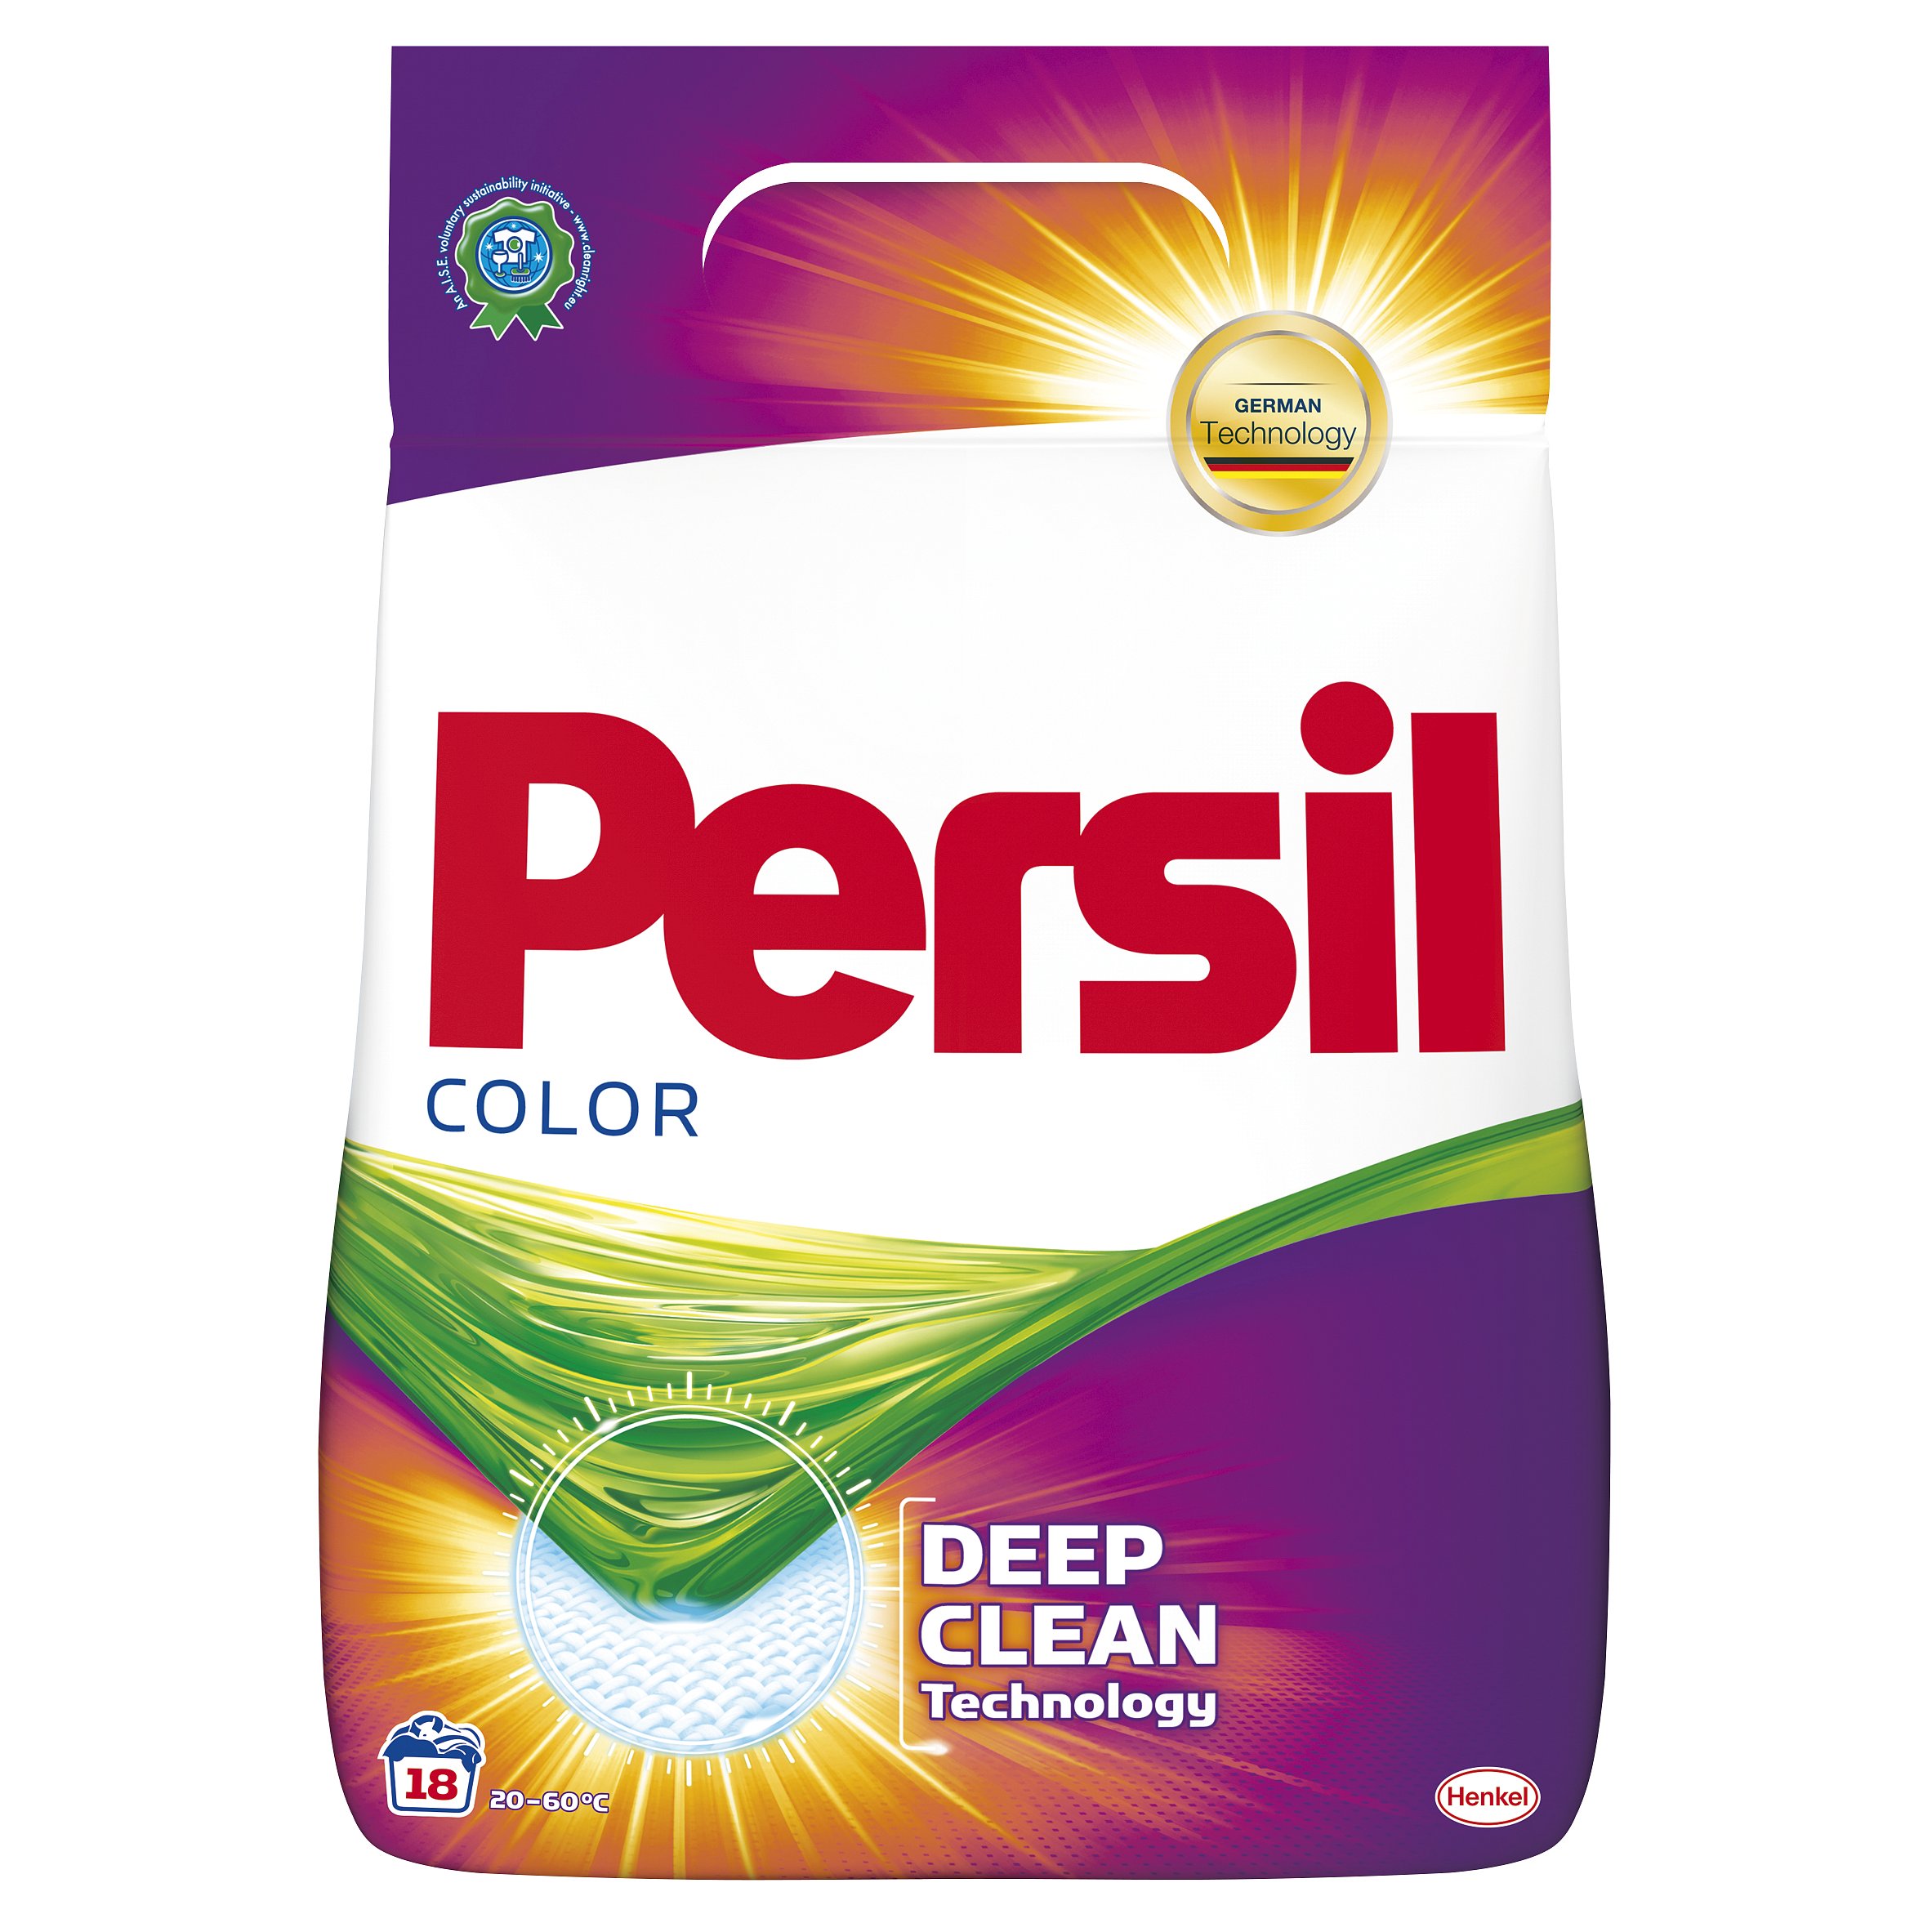 Persil Color prací prášek, 18 praní  1,17 kg